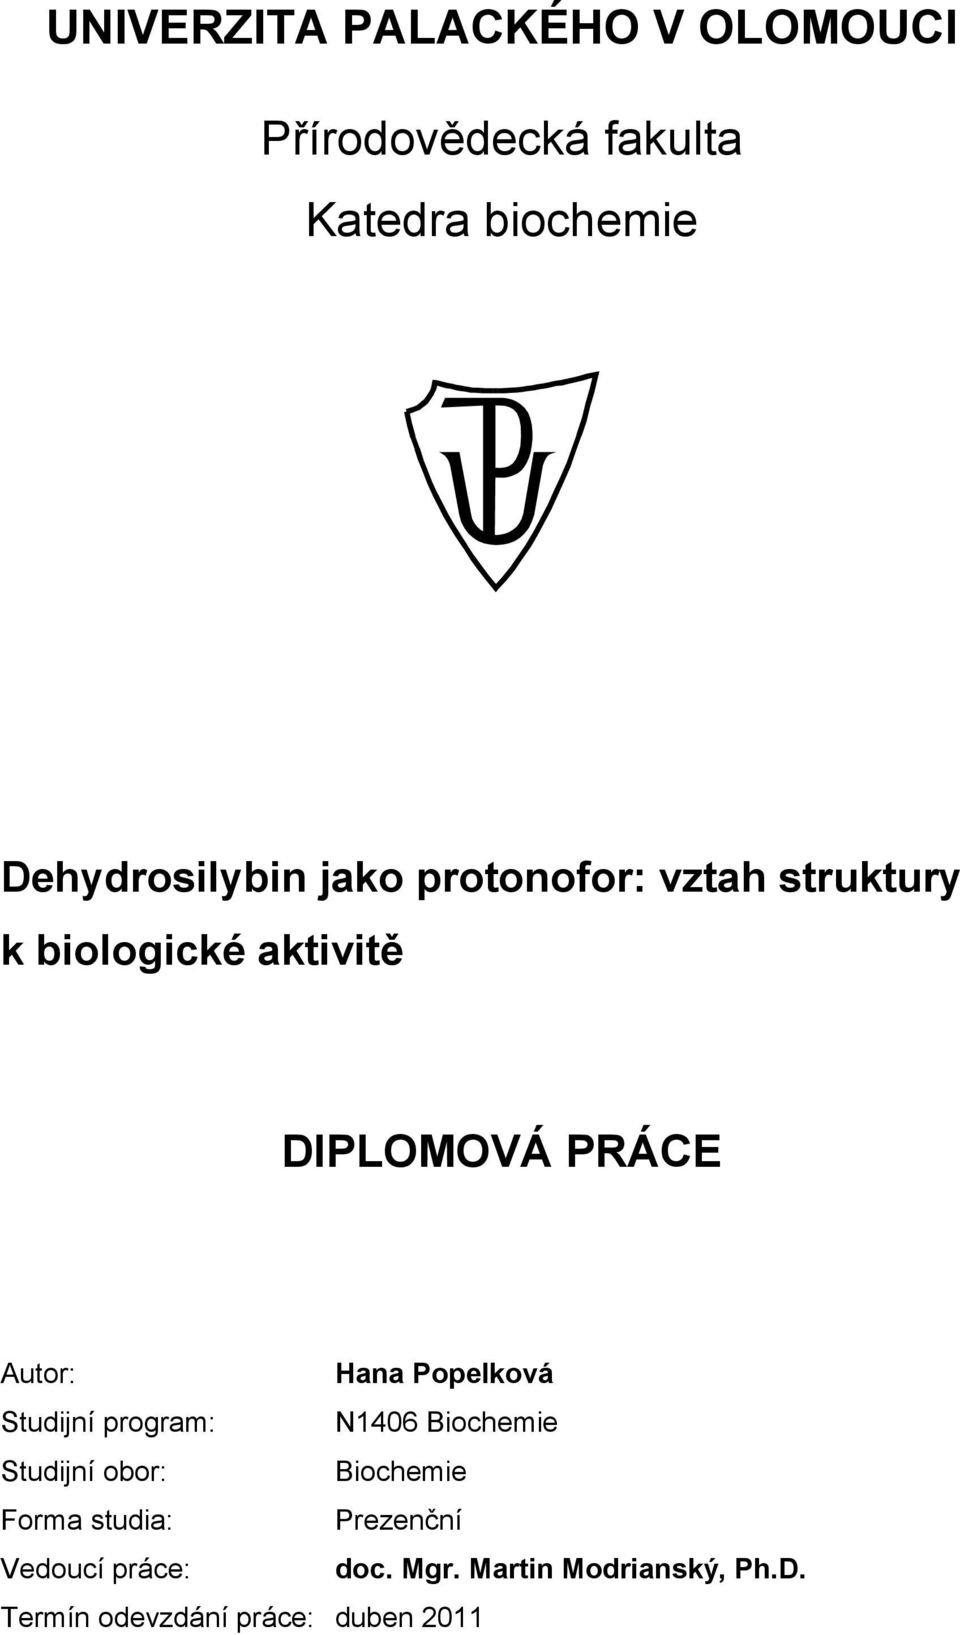 Autor: Hana Popelková Studijní program: N1406 Biochemie Studijní obor: Biochemie Forma